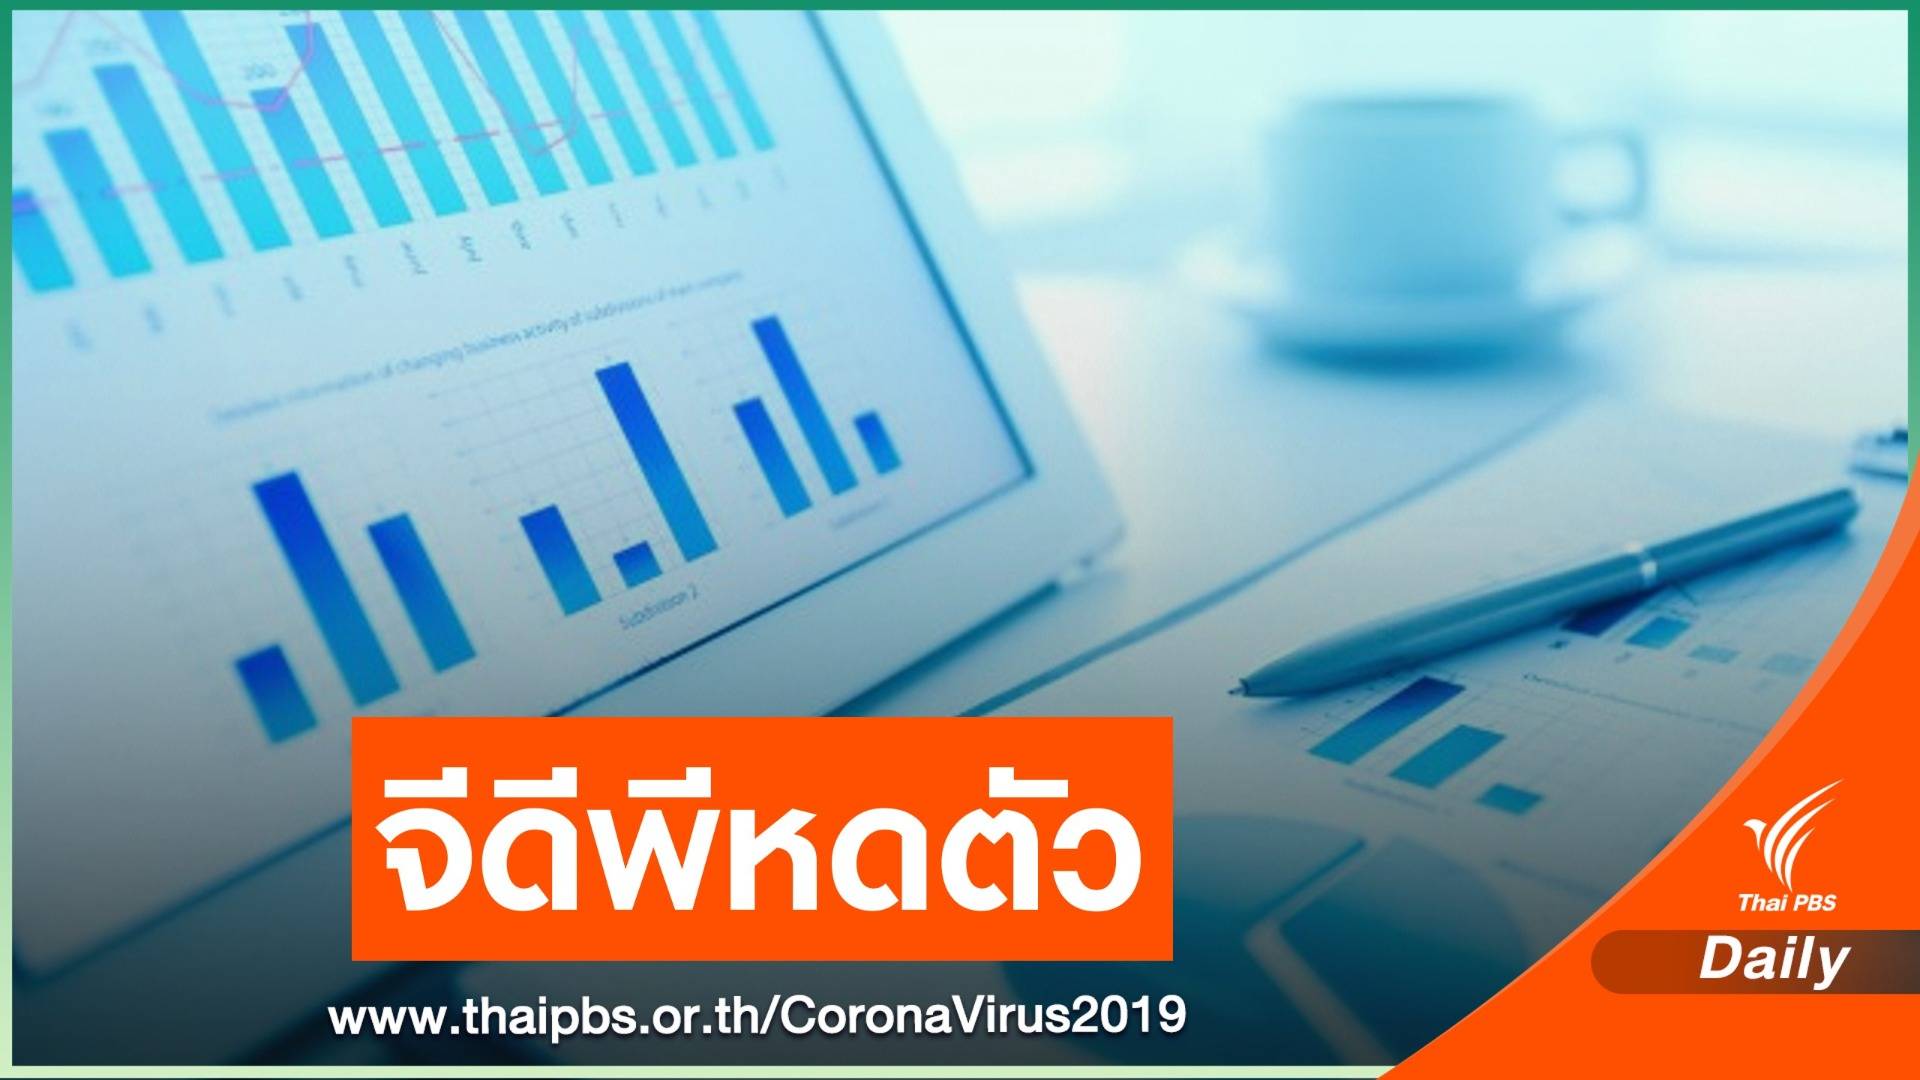 ศูนย์วิจัยกสิกรไทย คาดเศรษฐกิจไทยปี 63 จีดีพีหดตัว -6%